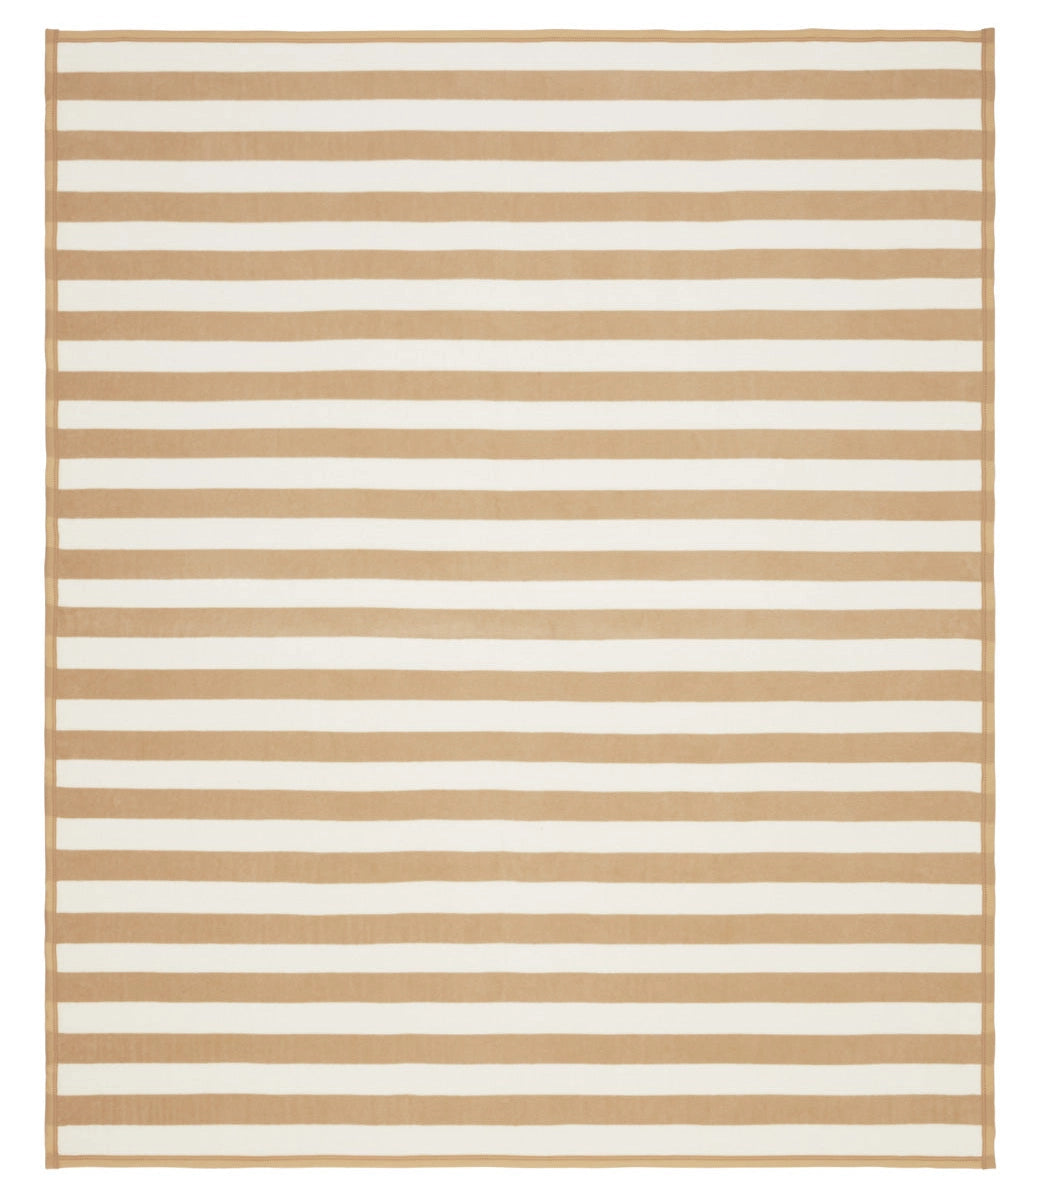 ChappyWrap Blanket- Classic Tan Stripe